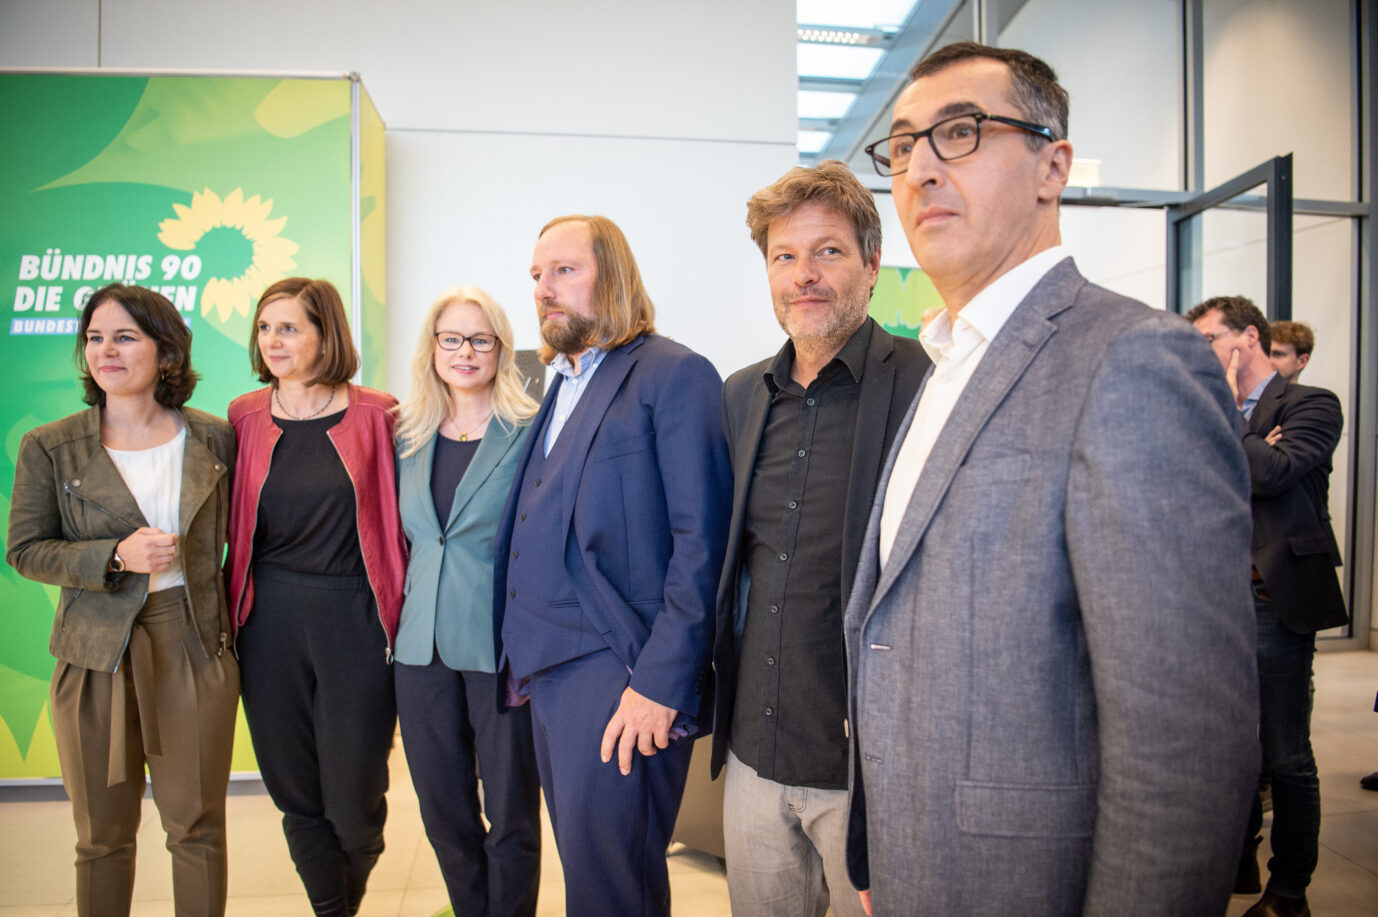 Grünen-Politiker (von links nach rechts): Annalena Baerbock, Katrin Göring-Eckardt, Kirsten Kappert-Gonther, Anton Hofreiter, Robert Habeck, Cem Özdemir